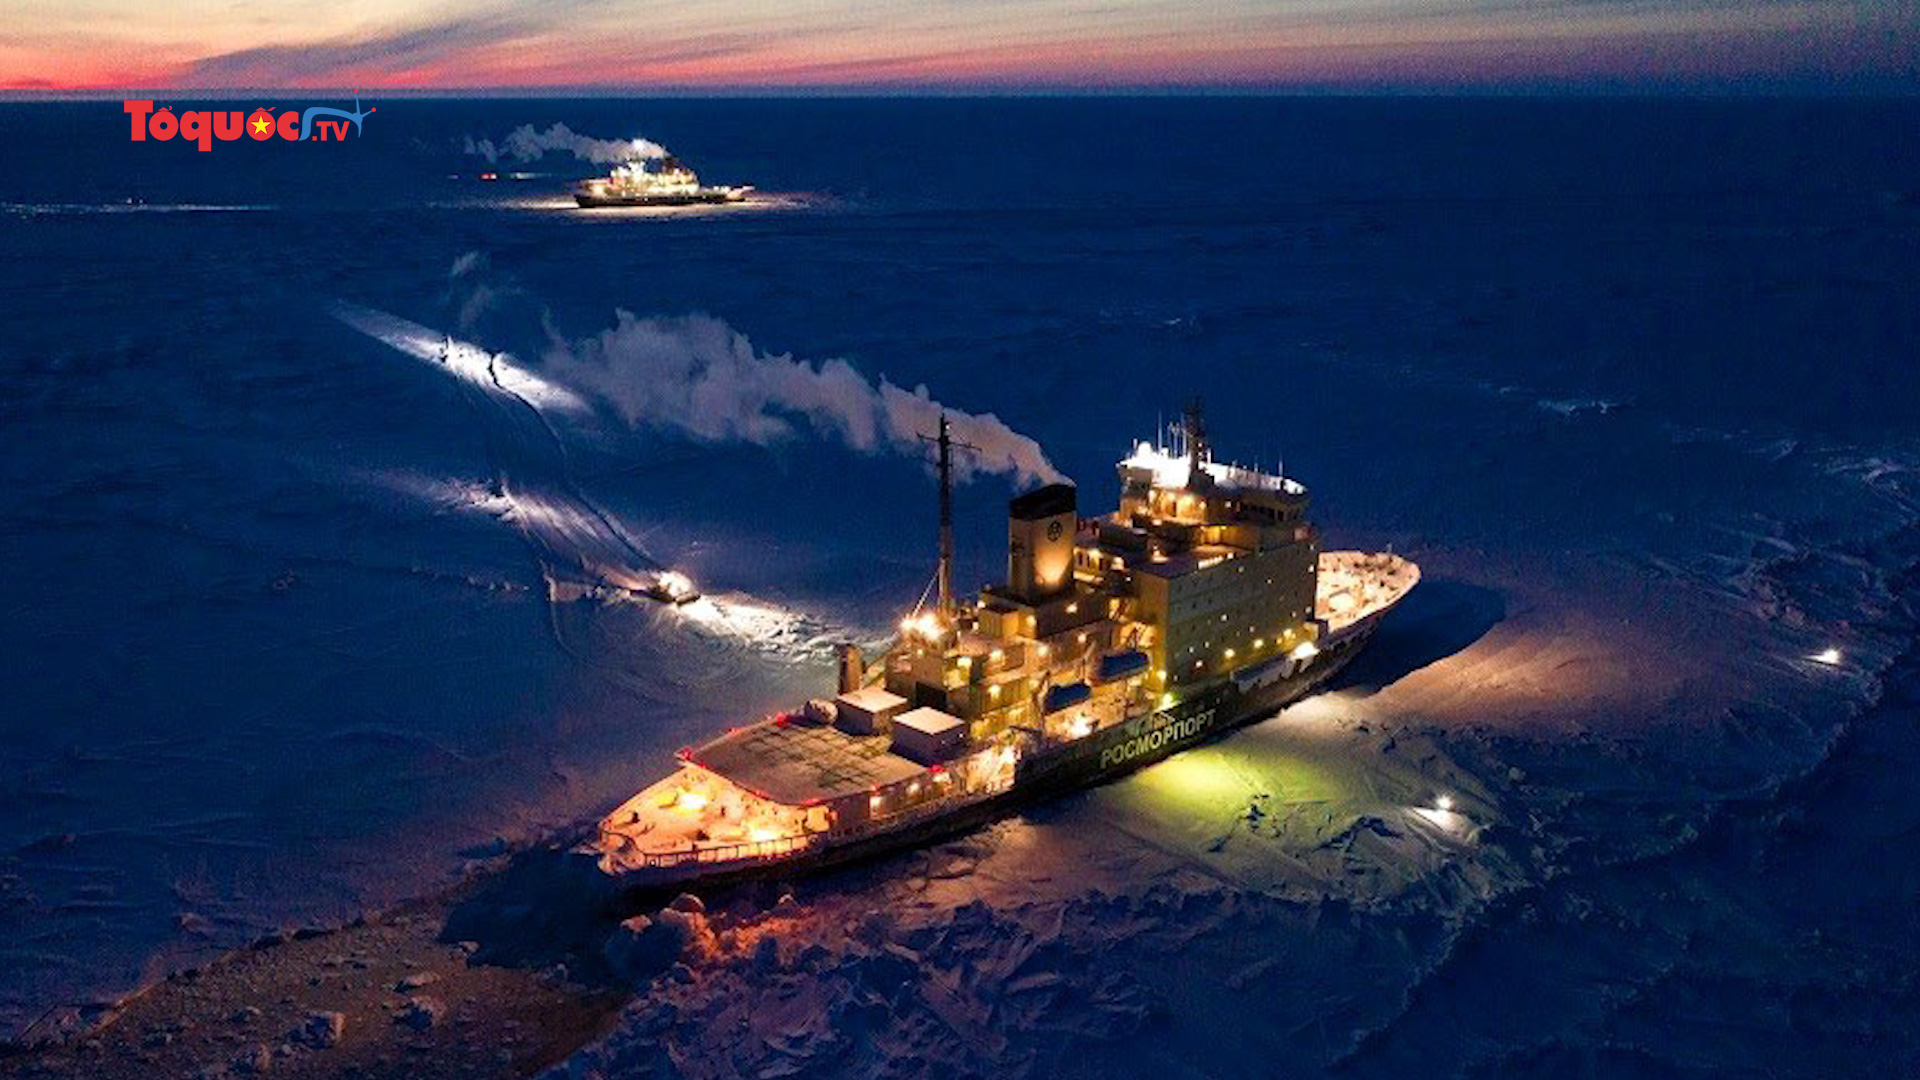 Hơn 100 nhà khoa học kẹt trên con tàu phá băng giữa Bắc Băng Dương